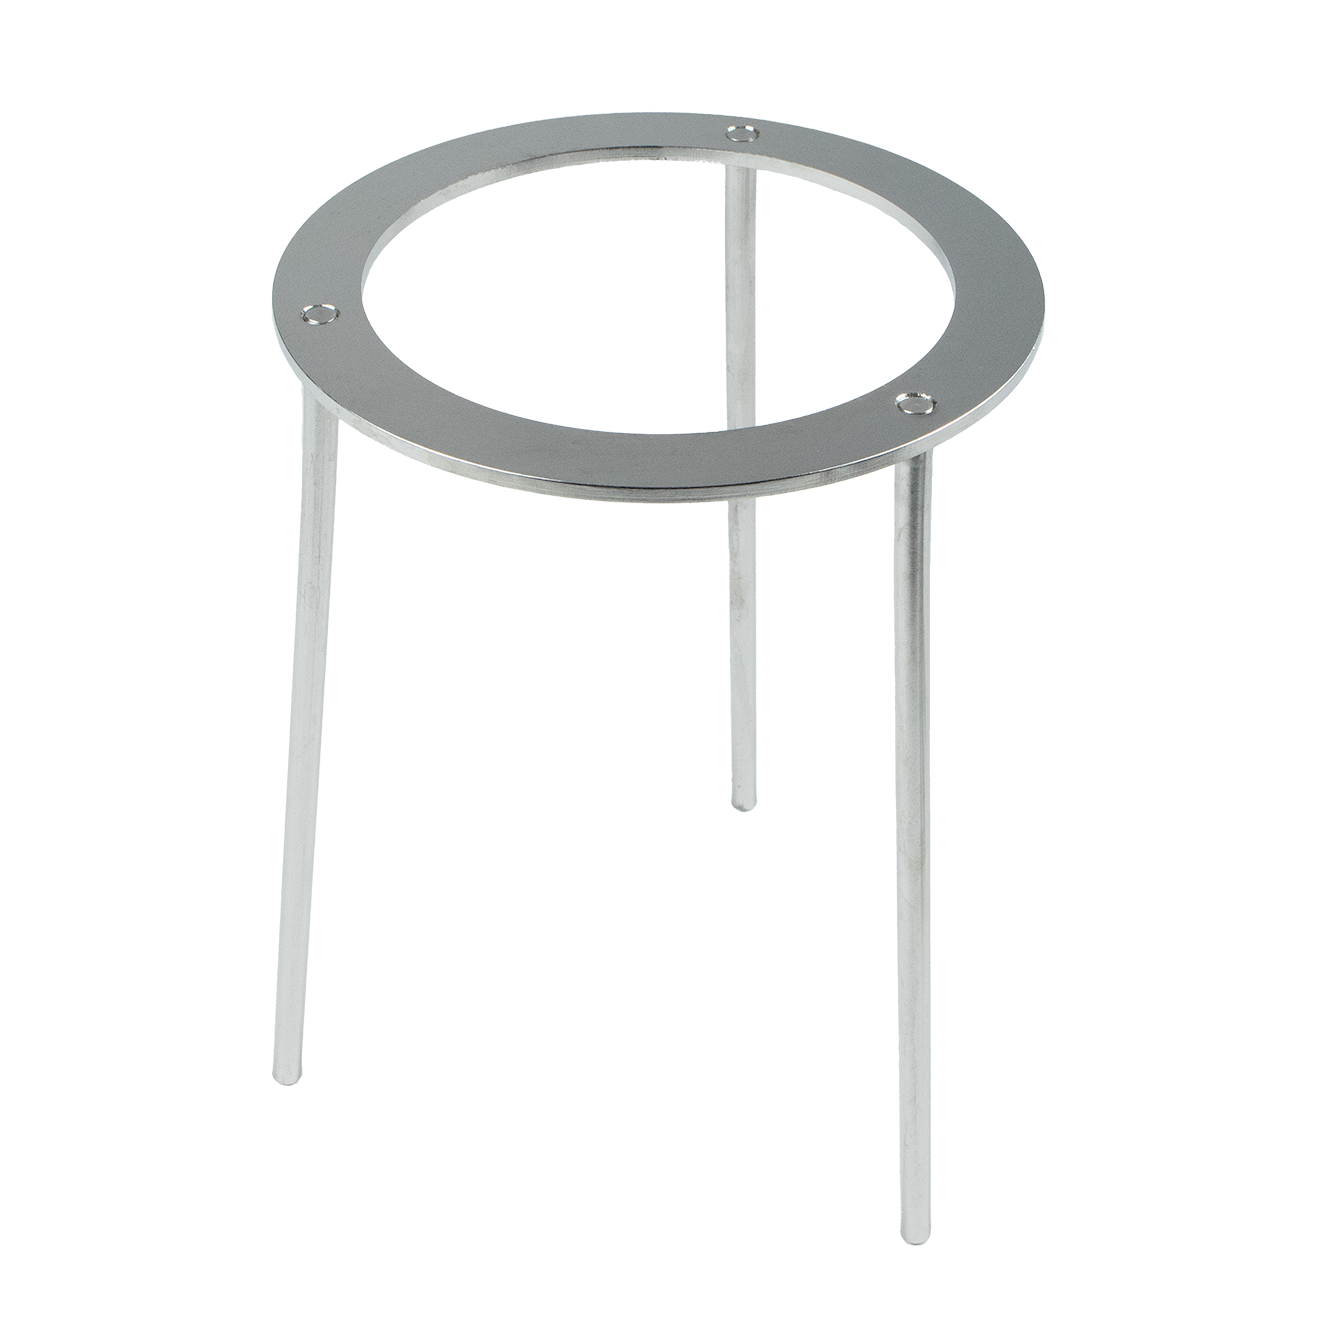 Tripod - height 150 mm, inner diameter 80 mm - stainless steel